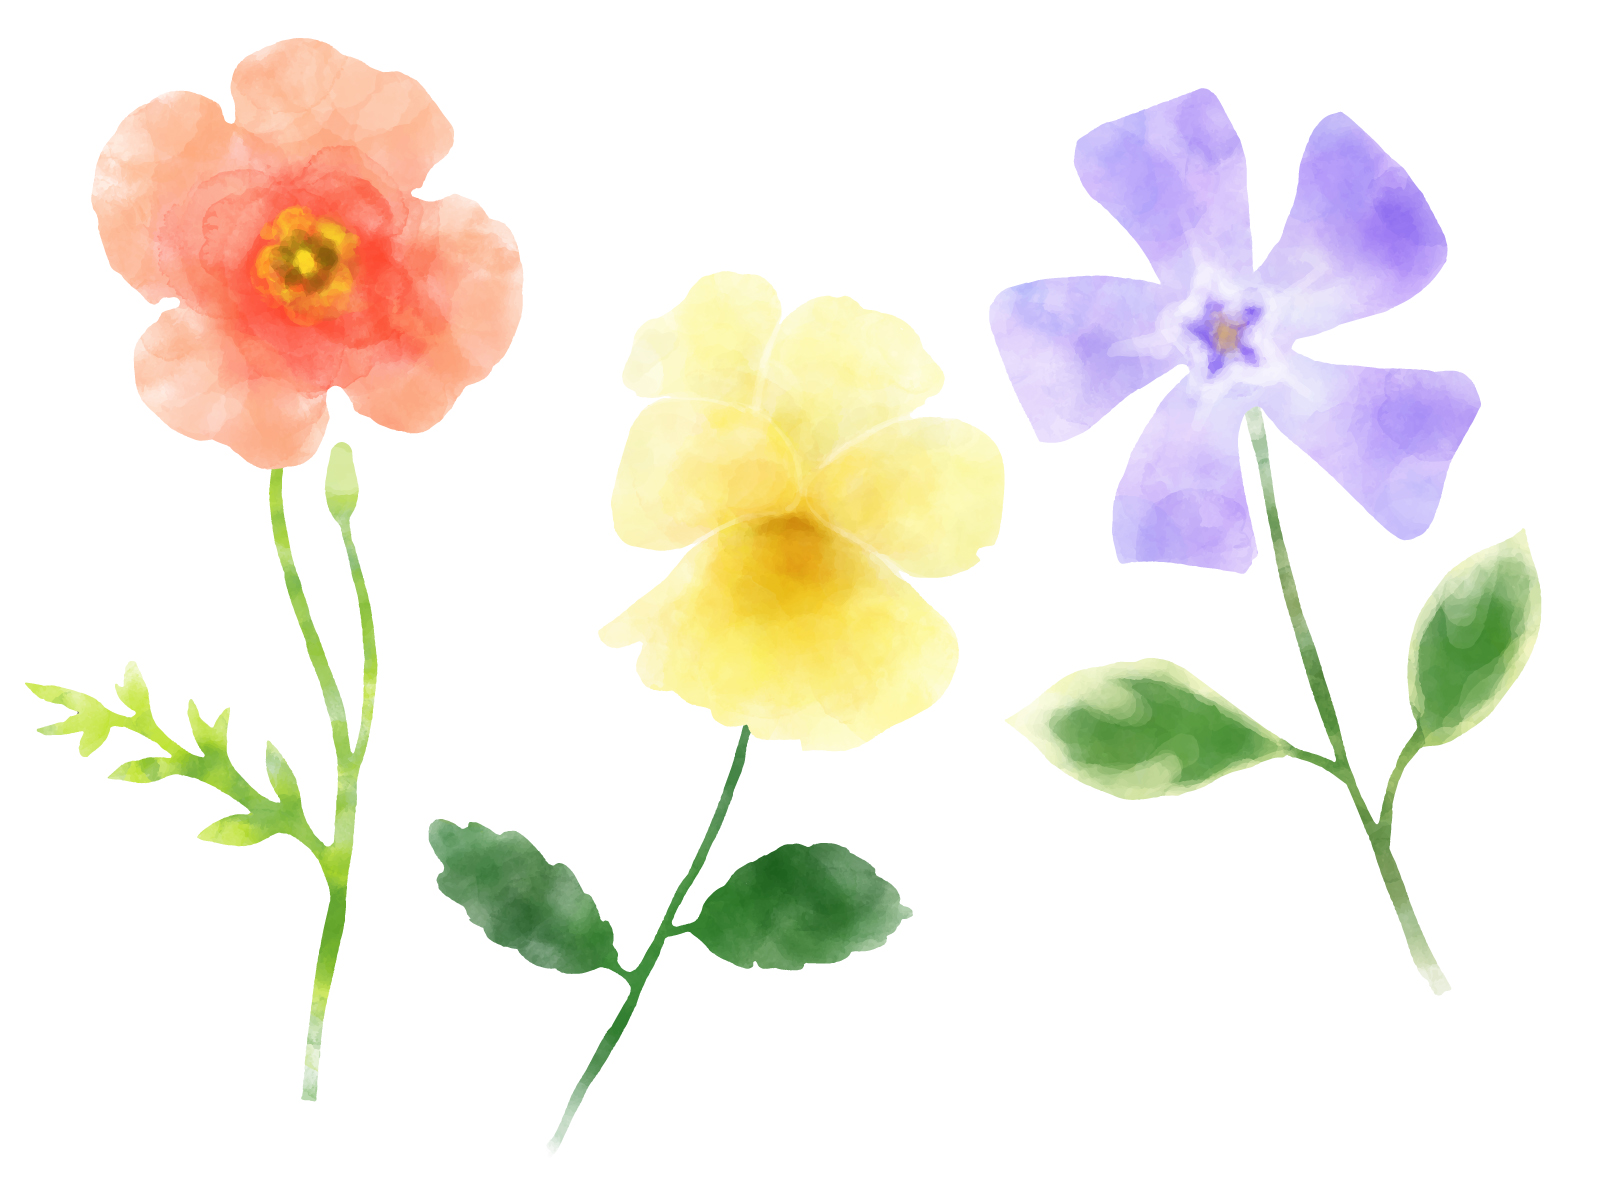 《4月4日》春らしく楽しいワークショップに参加しよう♪びわ湖大津館で「押し花しおり作り」が開催☆